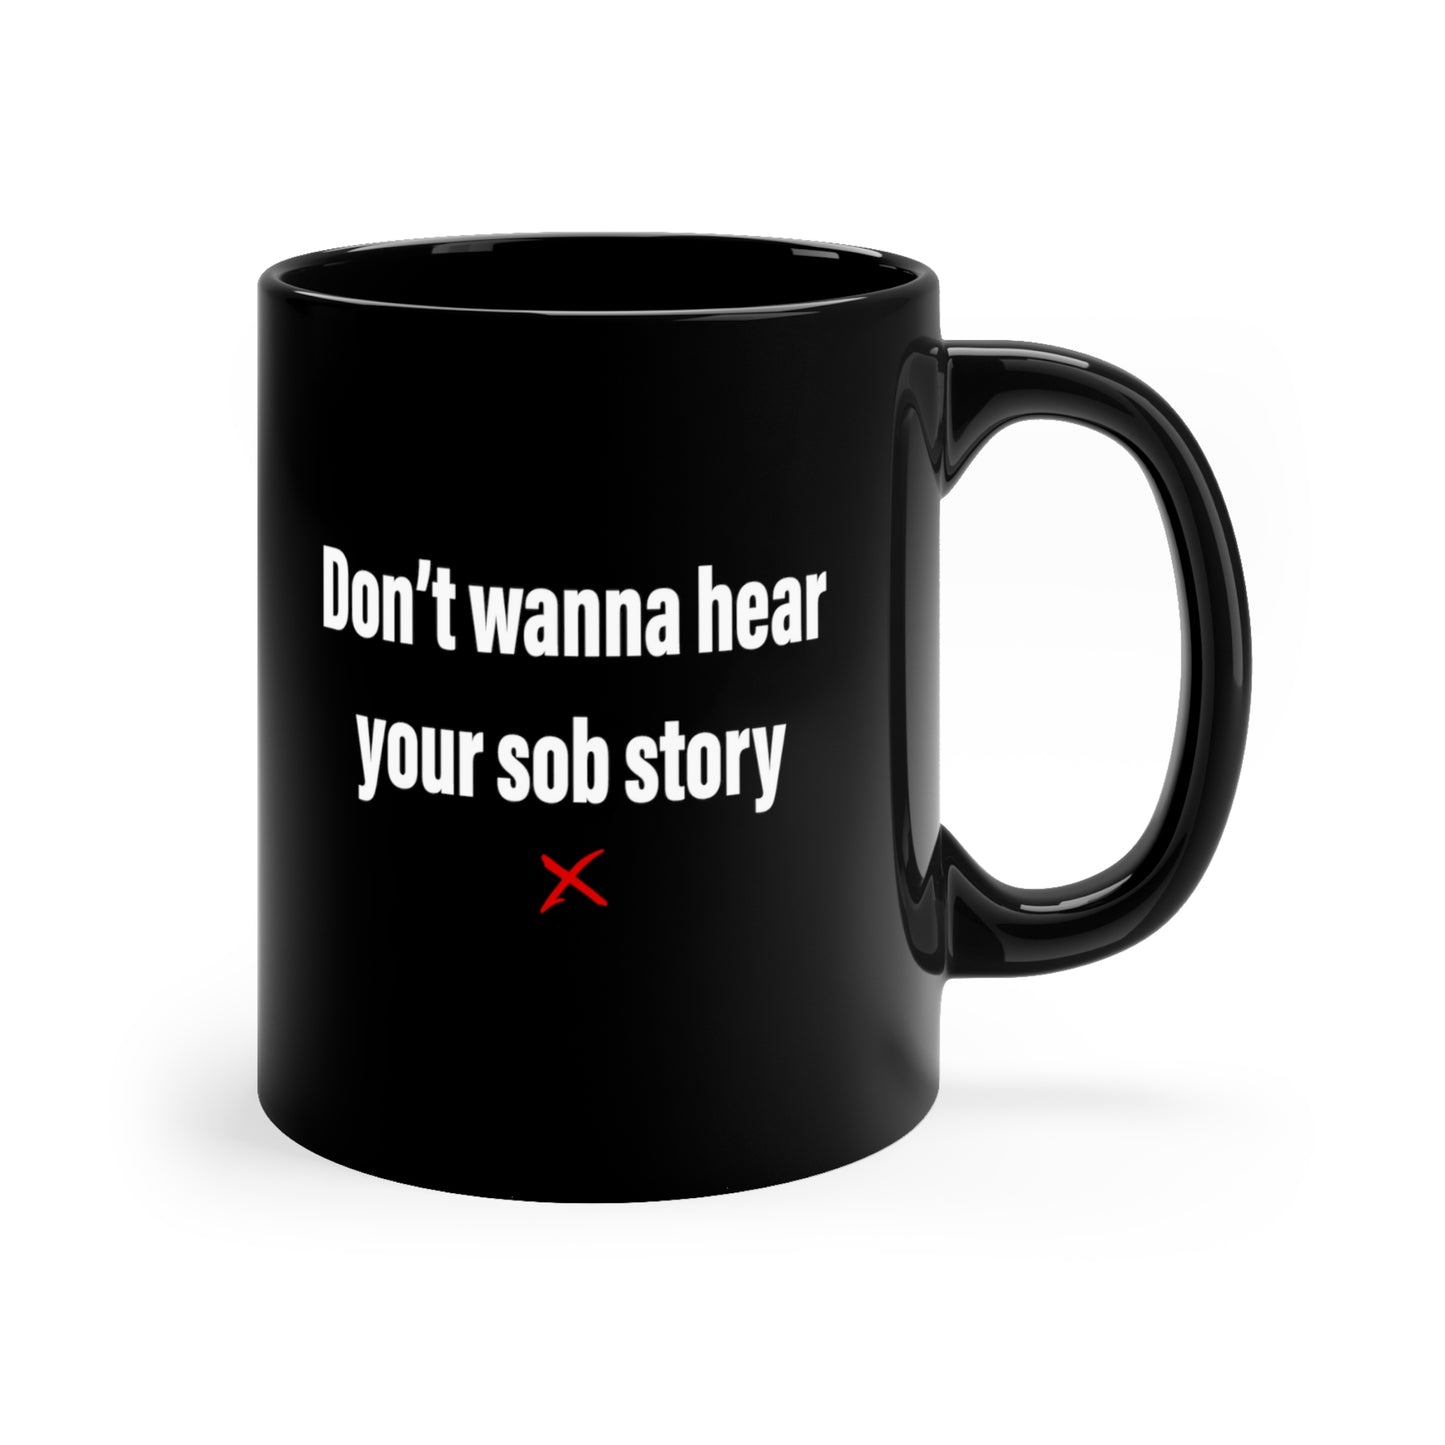 Don't wanna hear your sob story - Mug